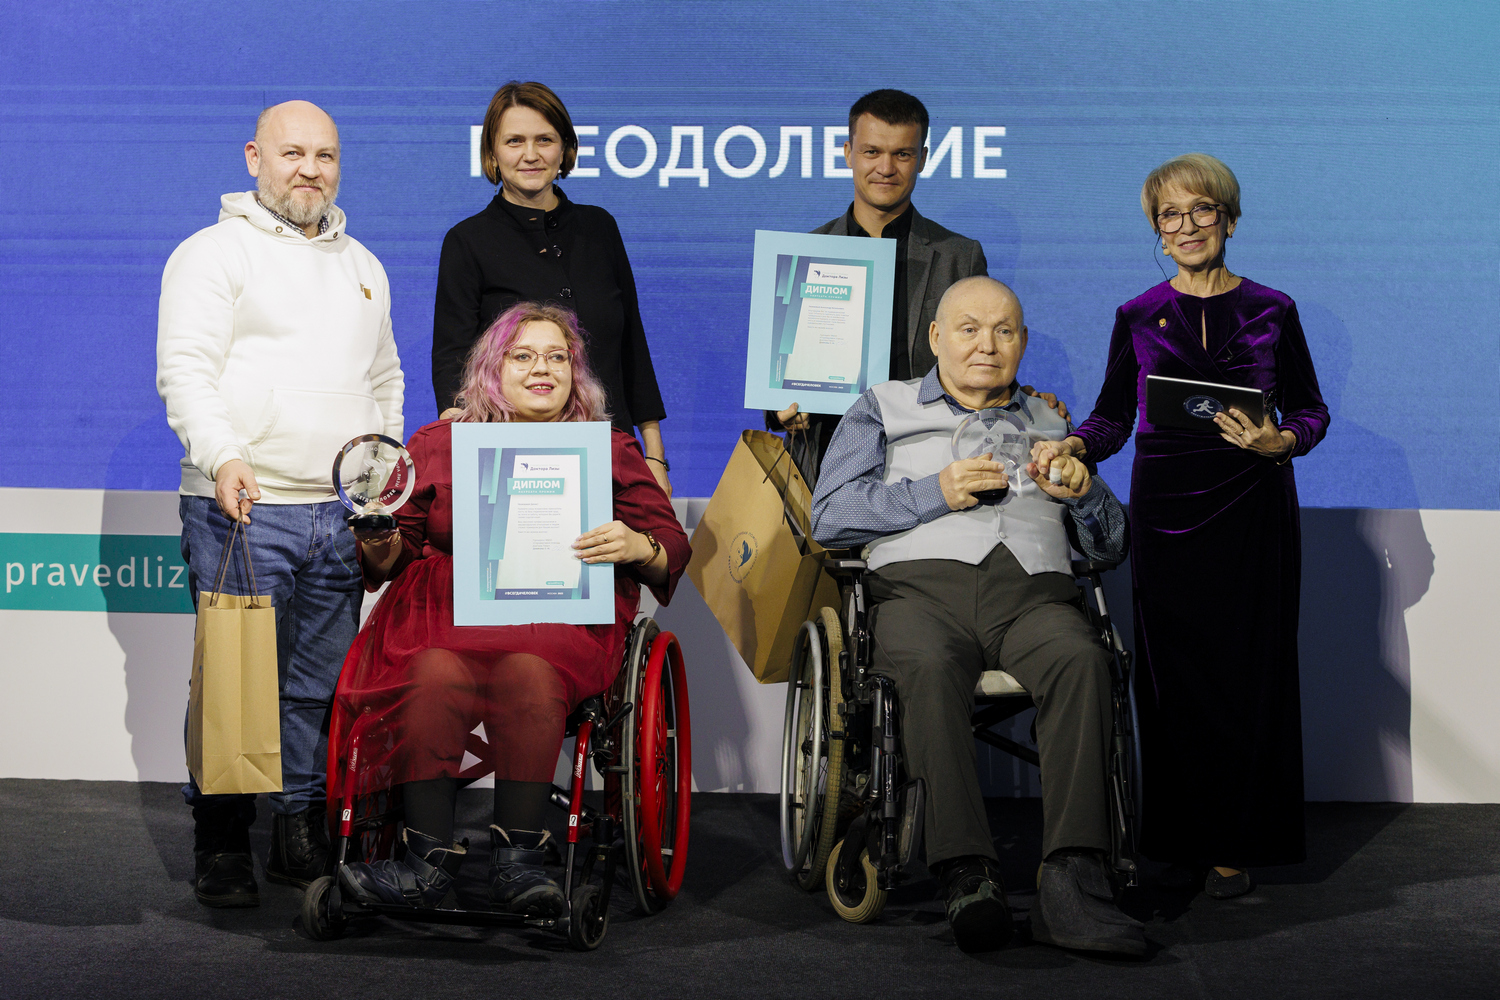 27 ноября в Москве МБОО «Справедливая помощь Доктора Лизы» отметила наиболее успешные проекты помощи людям